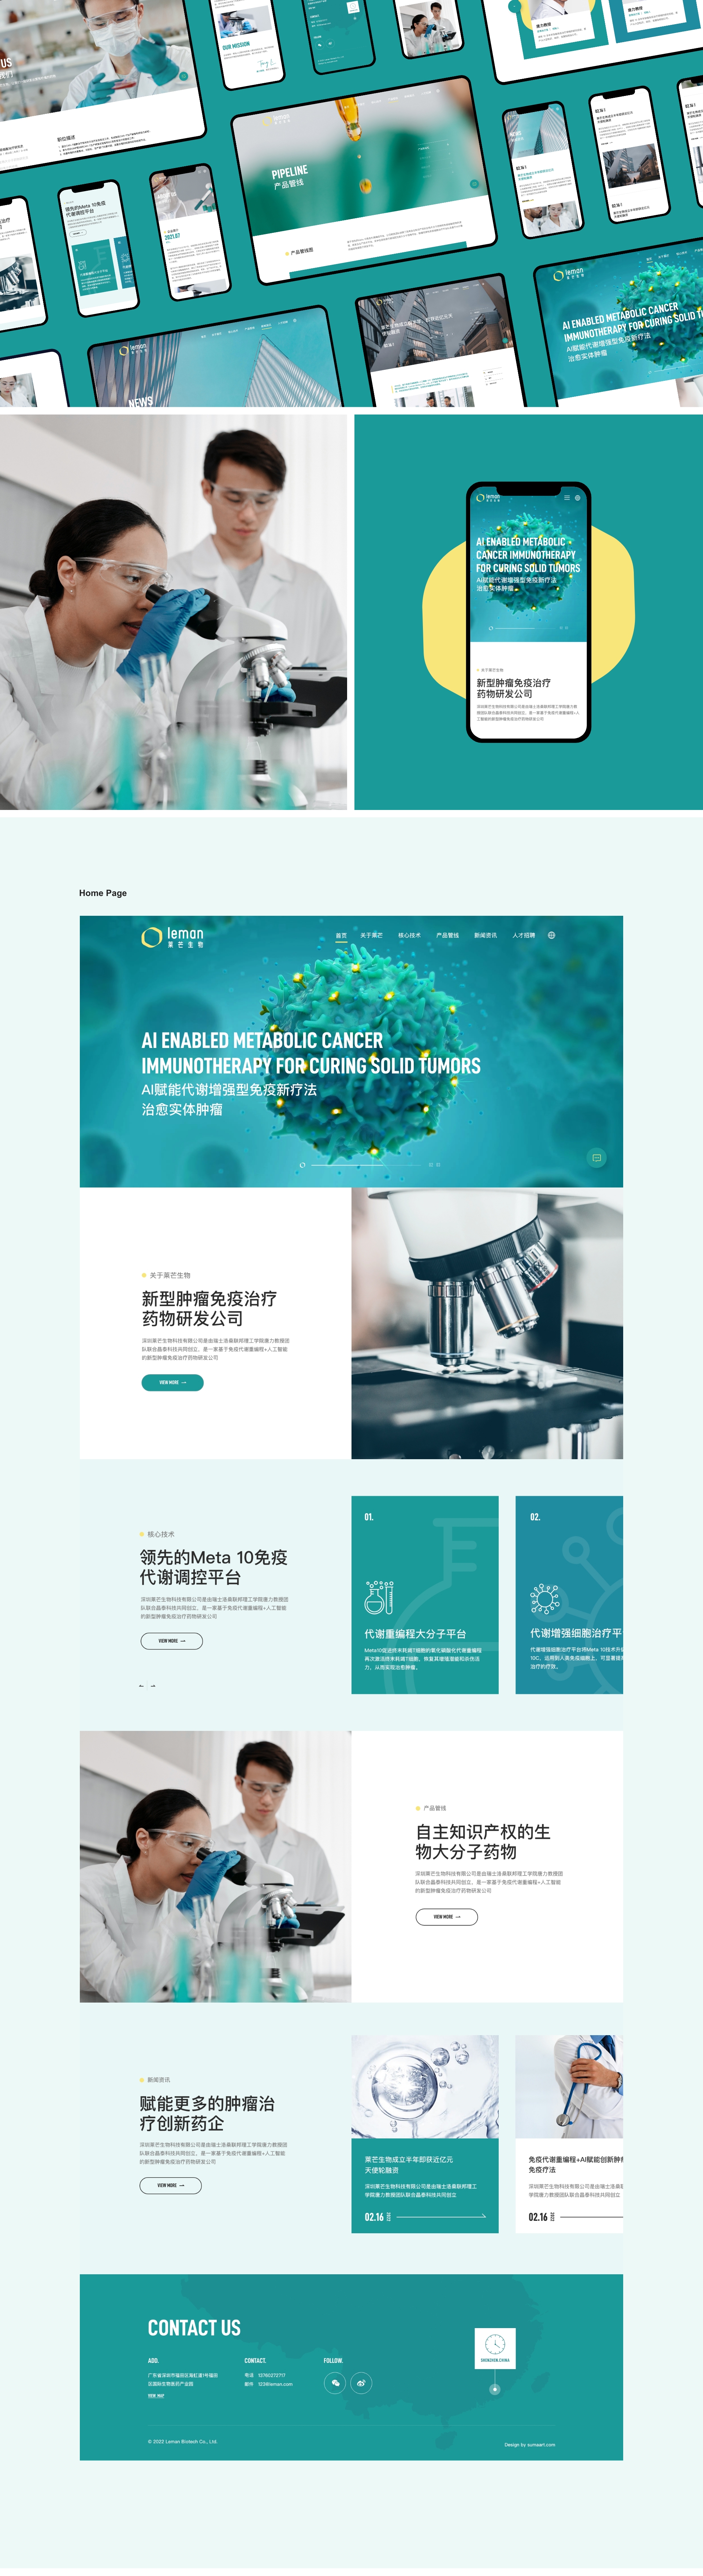 深圳莱芒生物科技有限公司官网网站0-素马设计作品